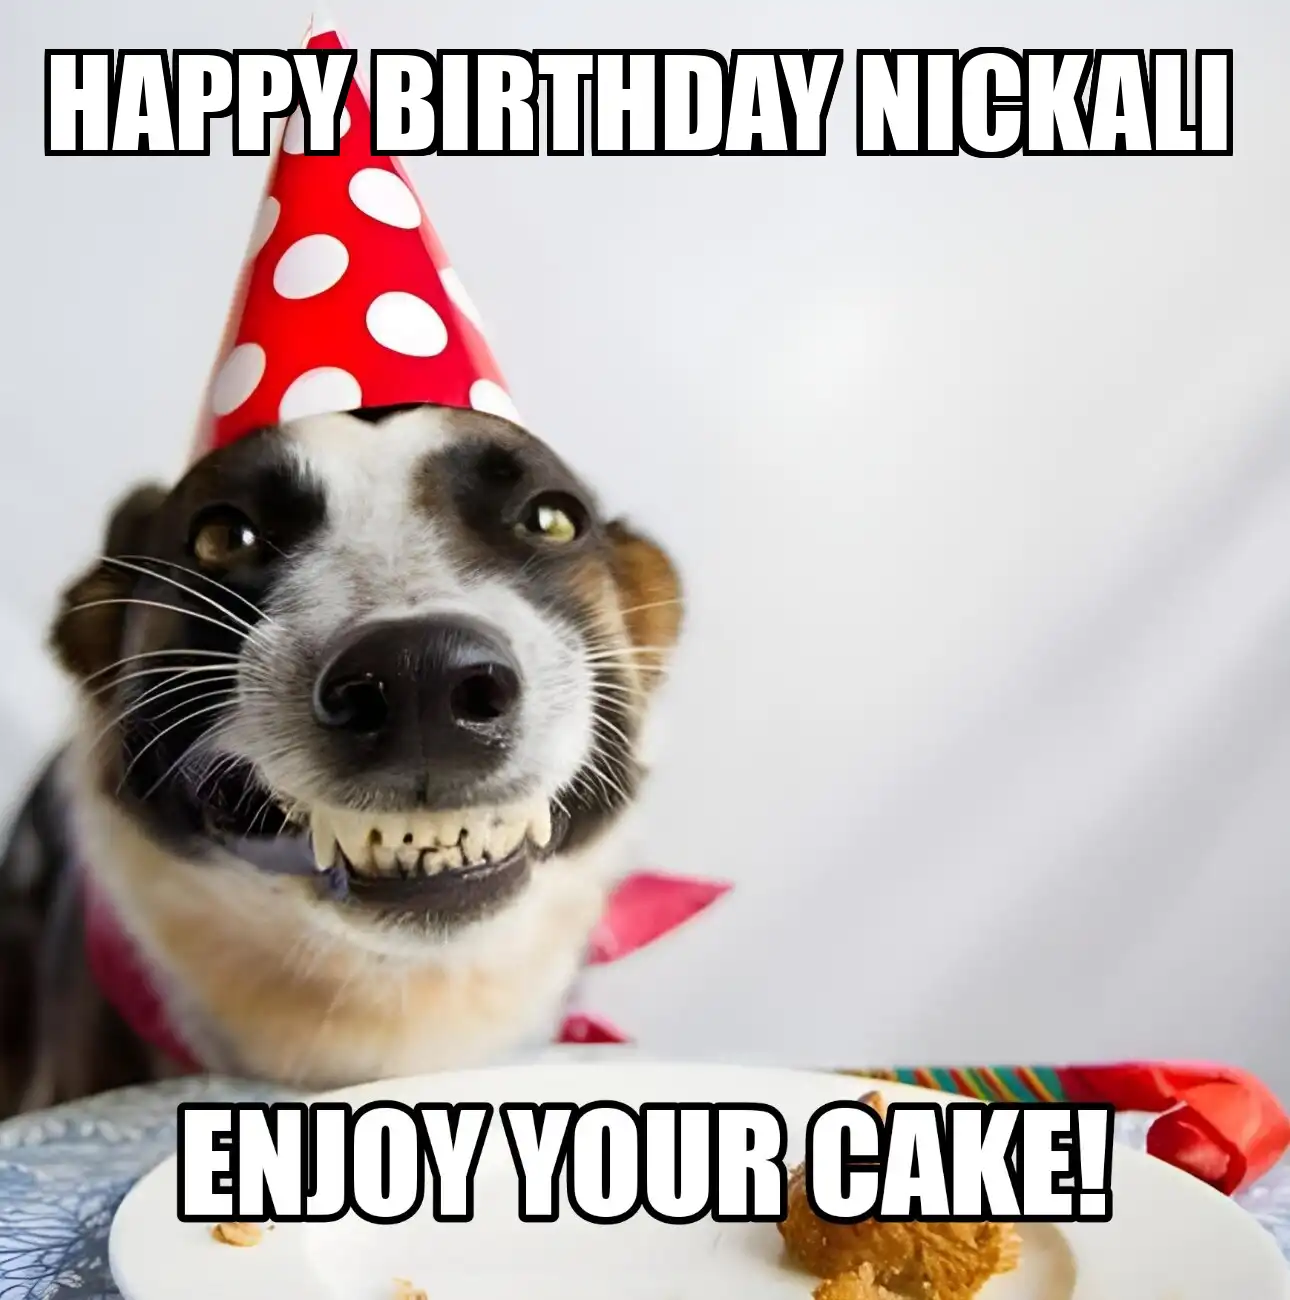 Happy Birthday Nickali Enjoy Your Cake Dog Meme